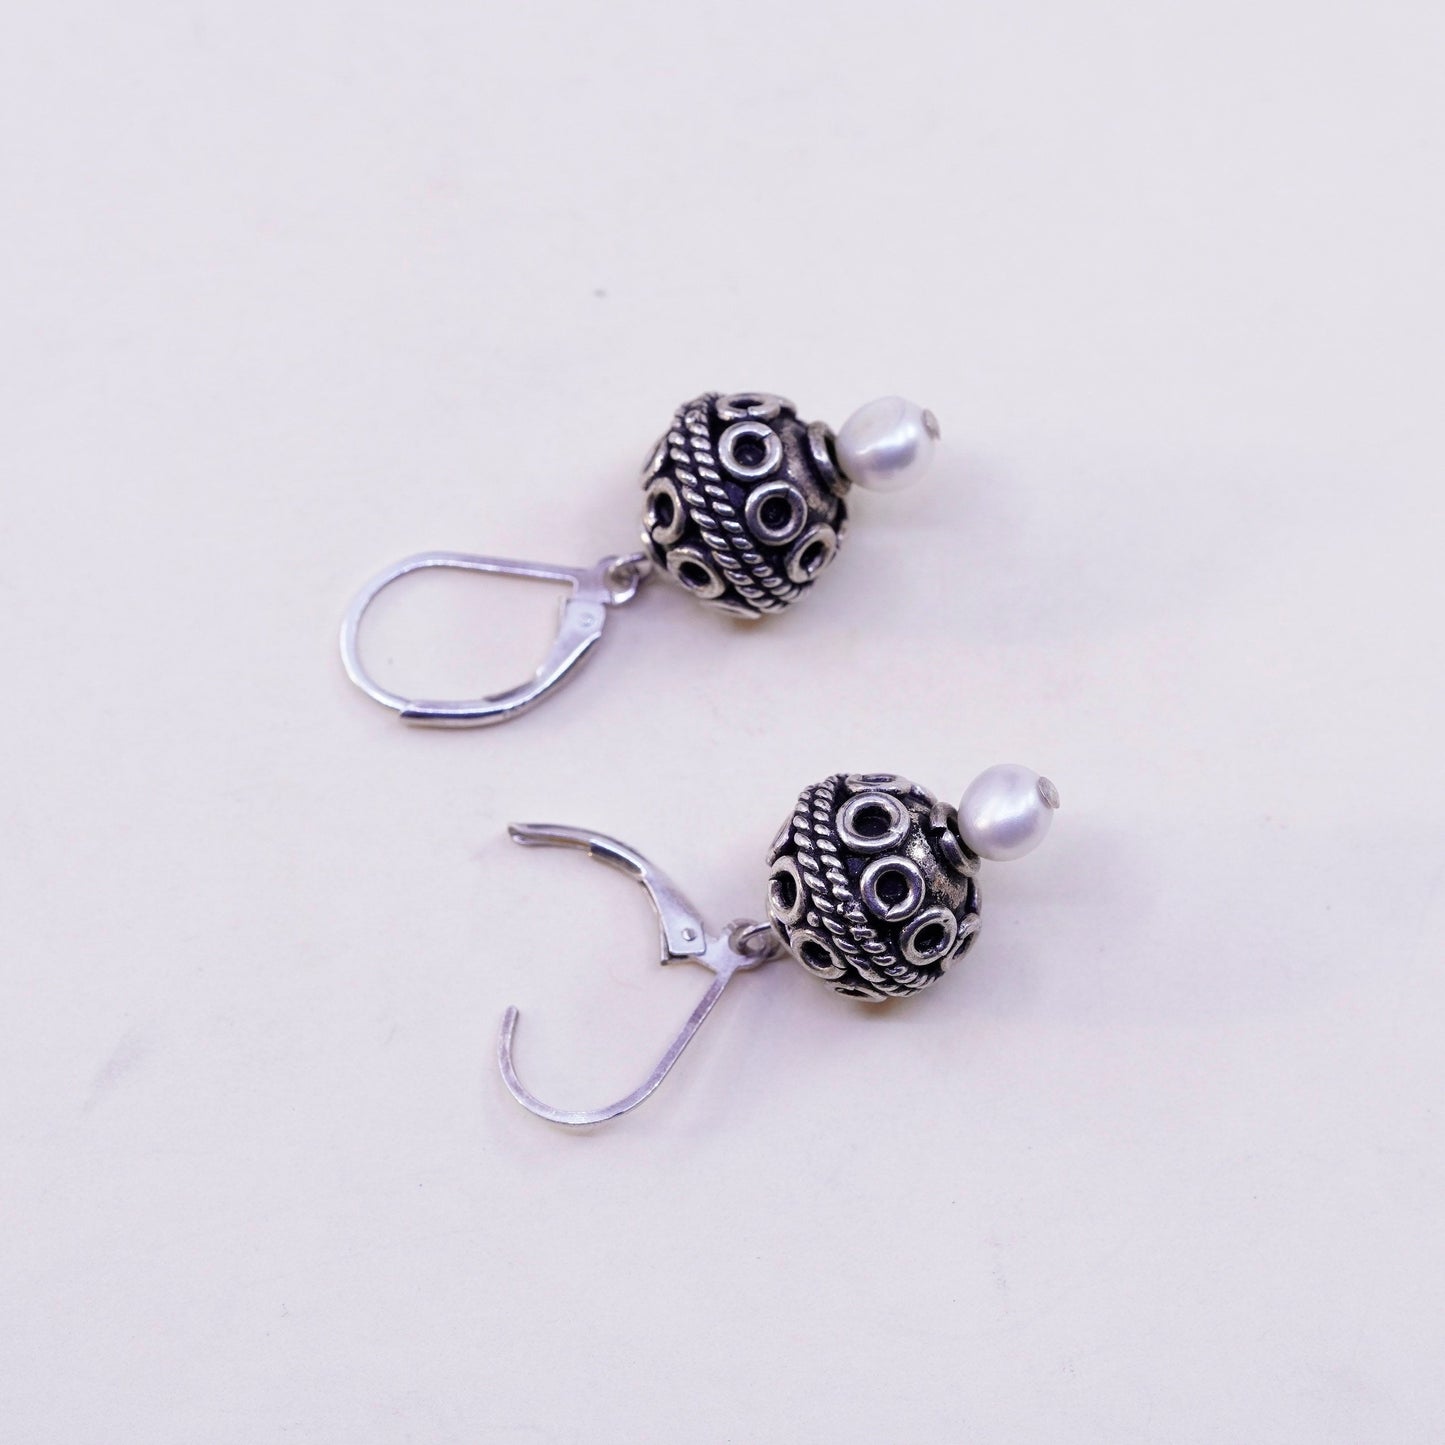 Vintage Sterling silver handmade Bali earrings, 925 swirl bead with pearl